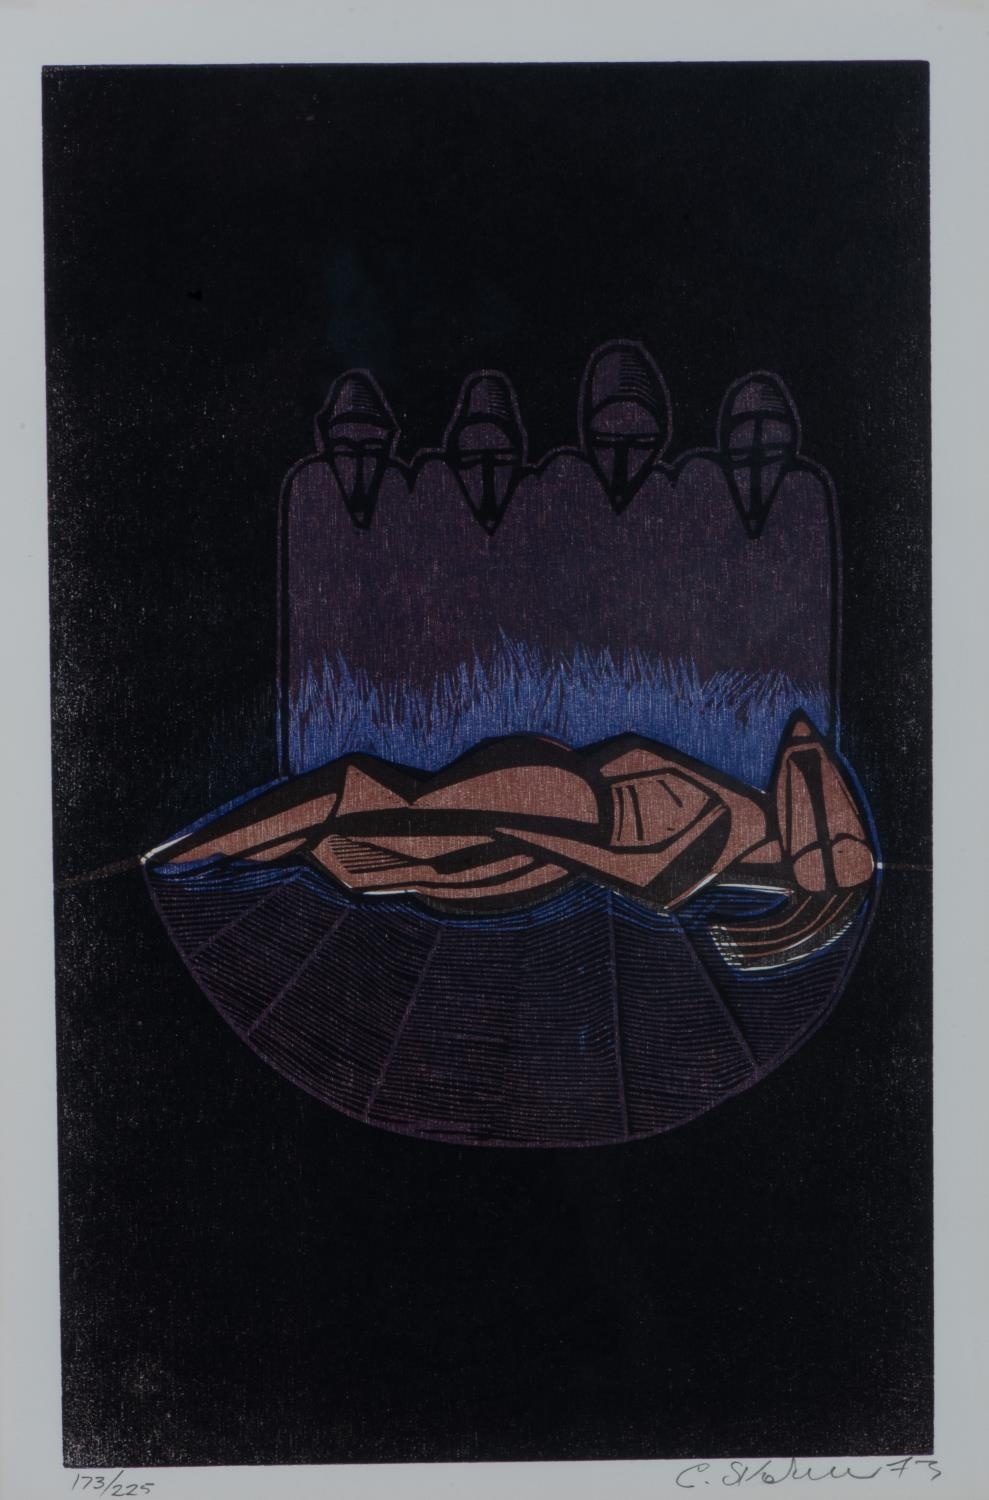 DINGISWAYO DIES by Cecil Skotnes, dated 73